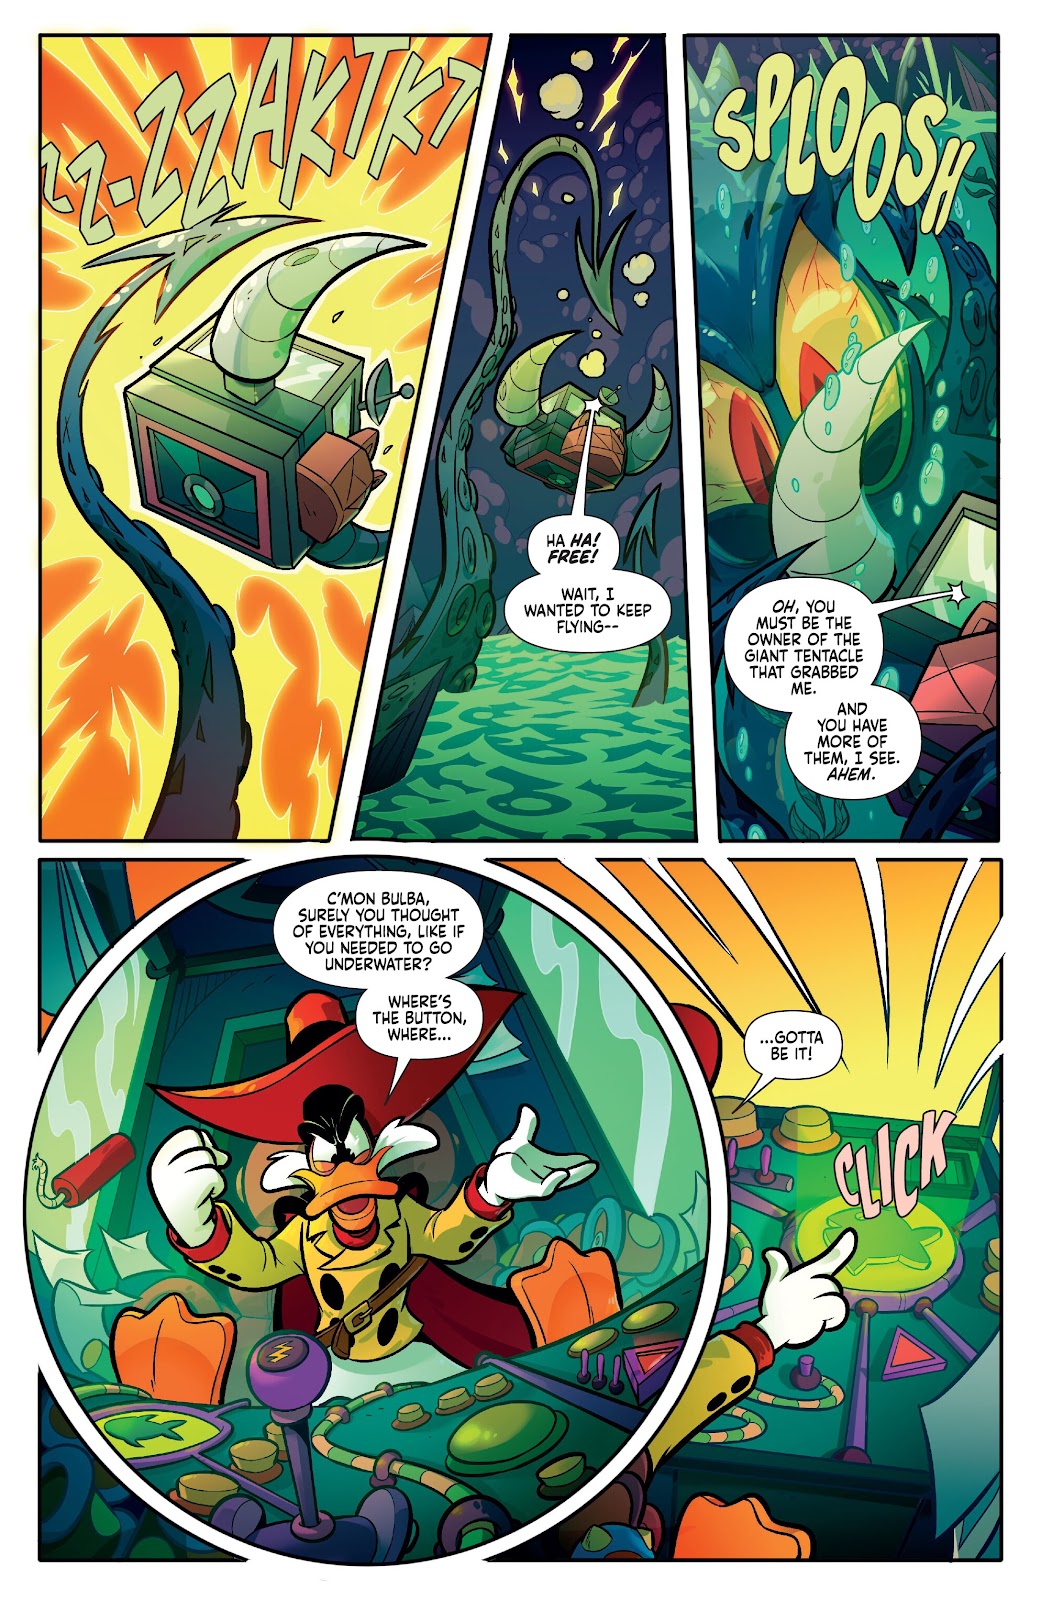 Darkwing Duck: Negaduck issue 3 - Page 8